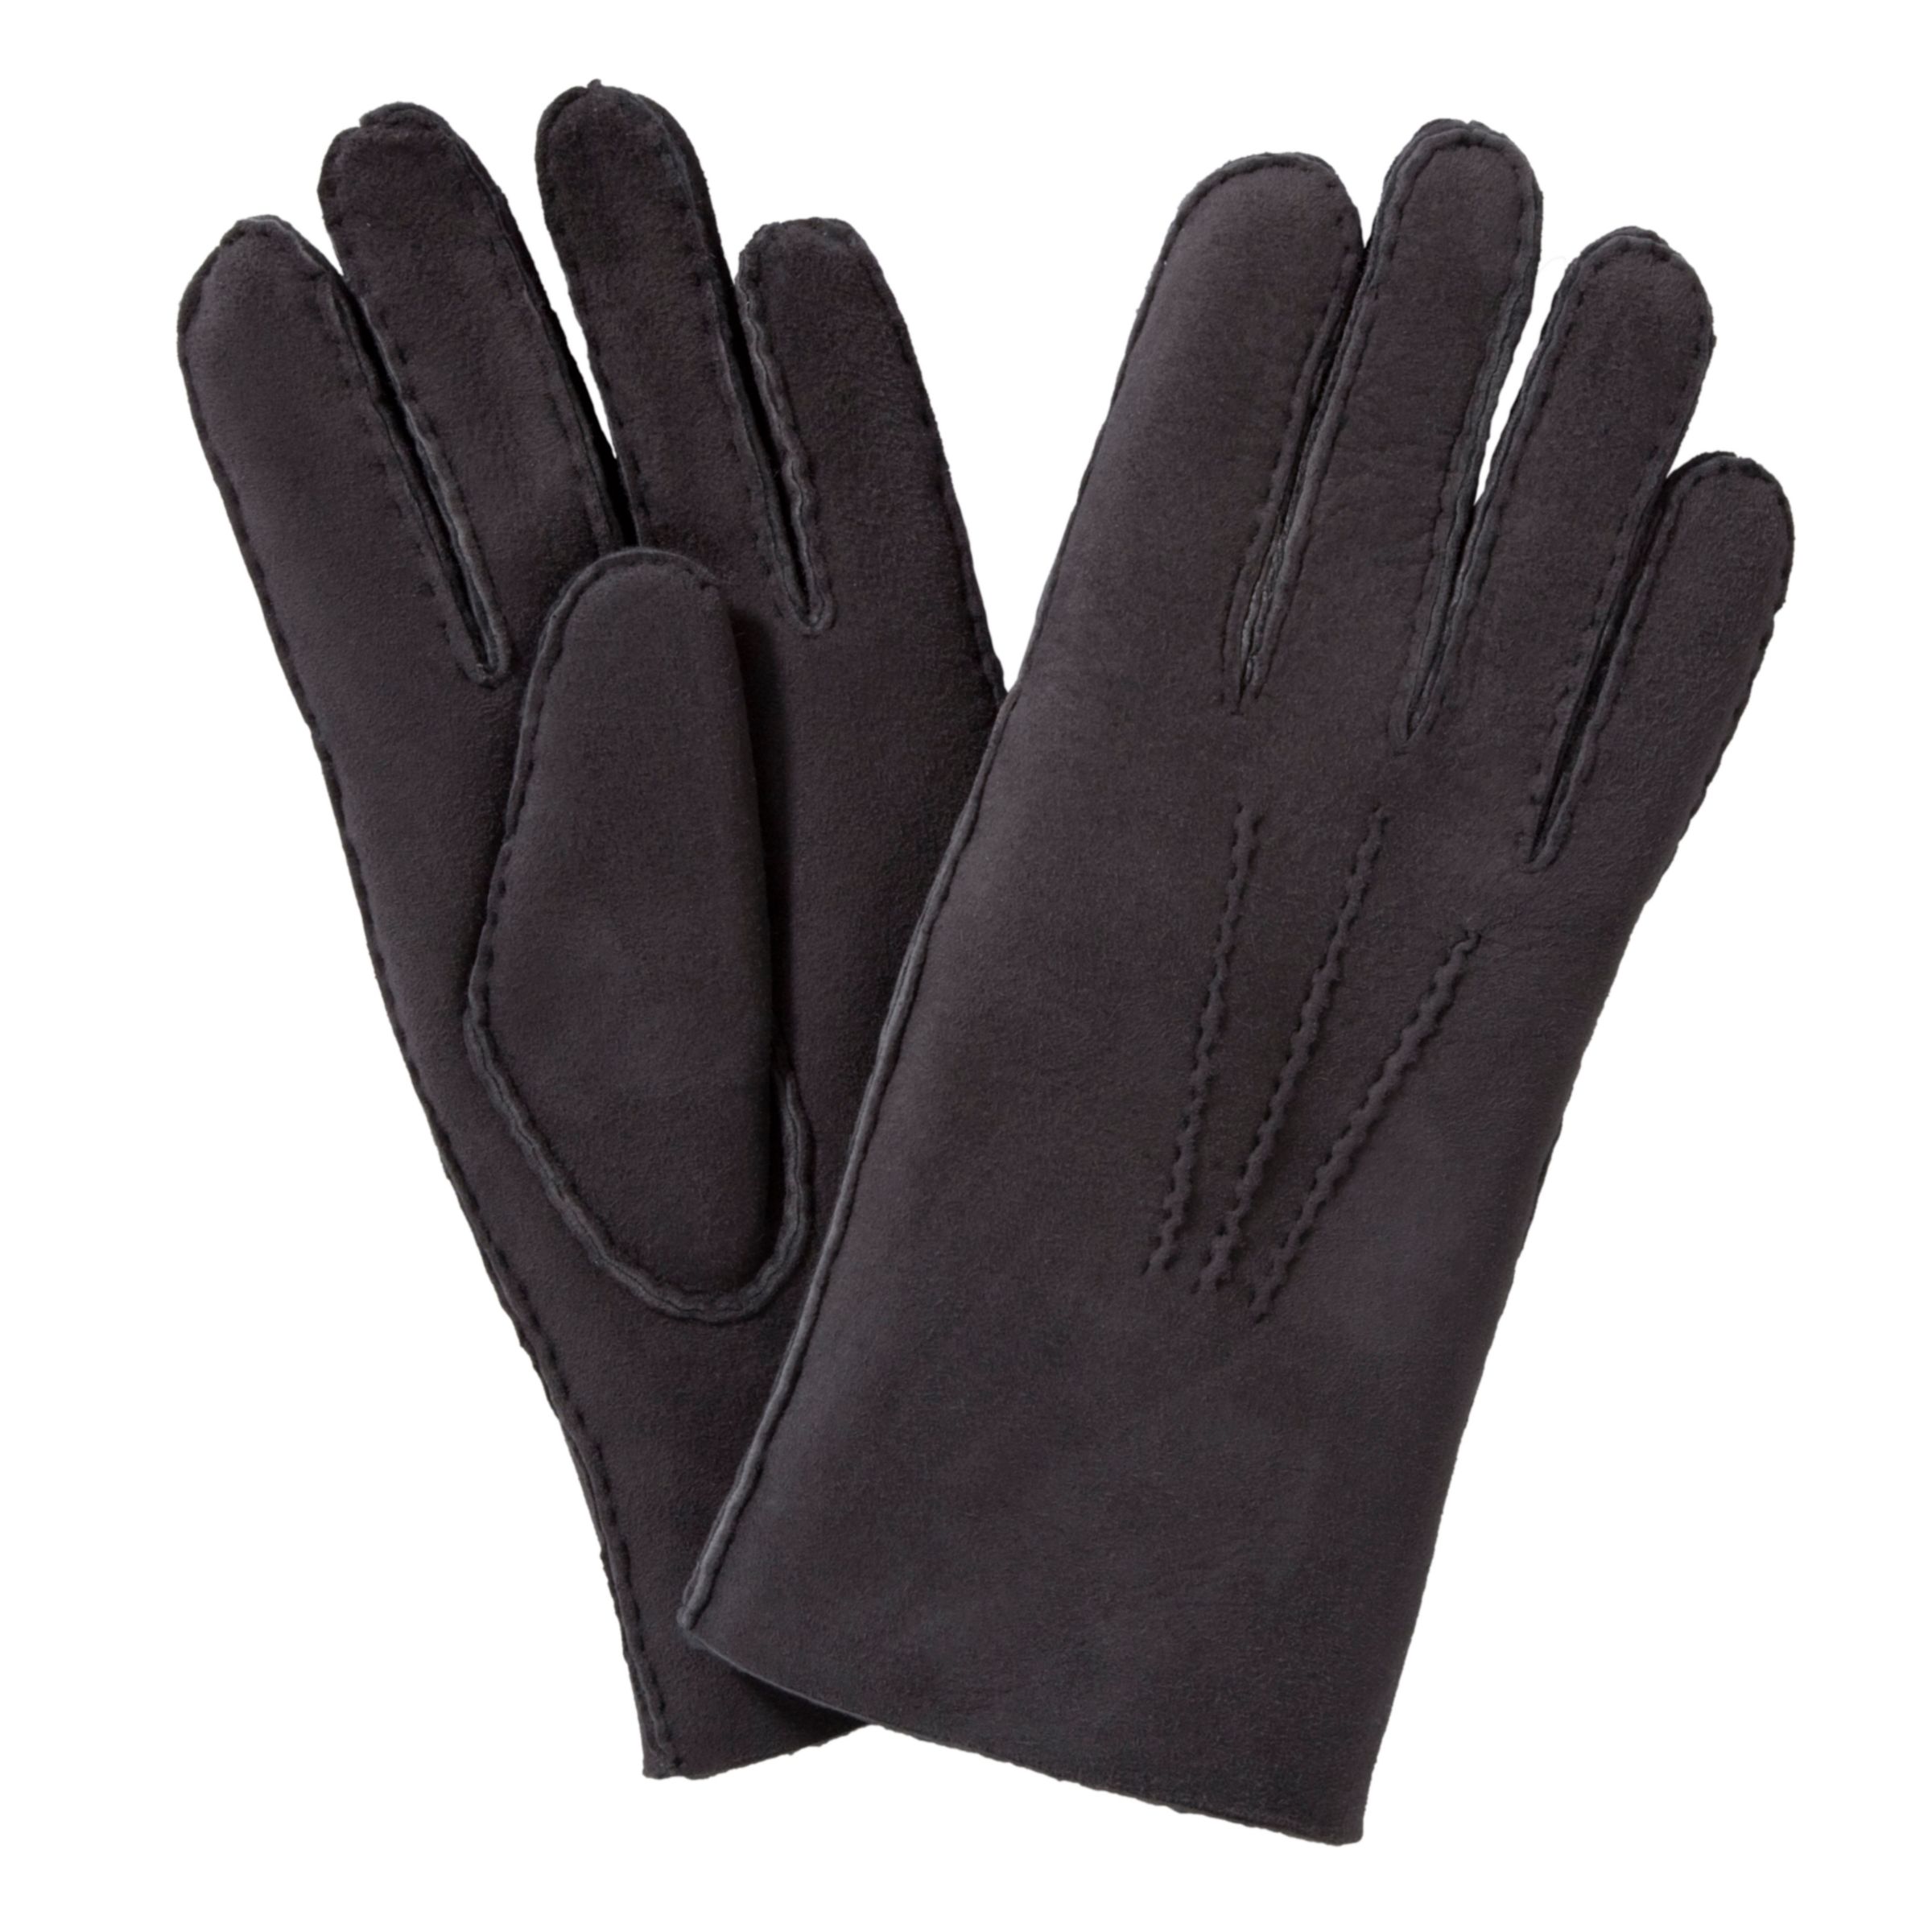 lambskin gloves ladies